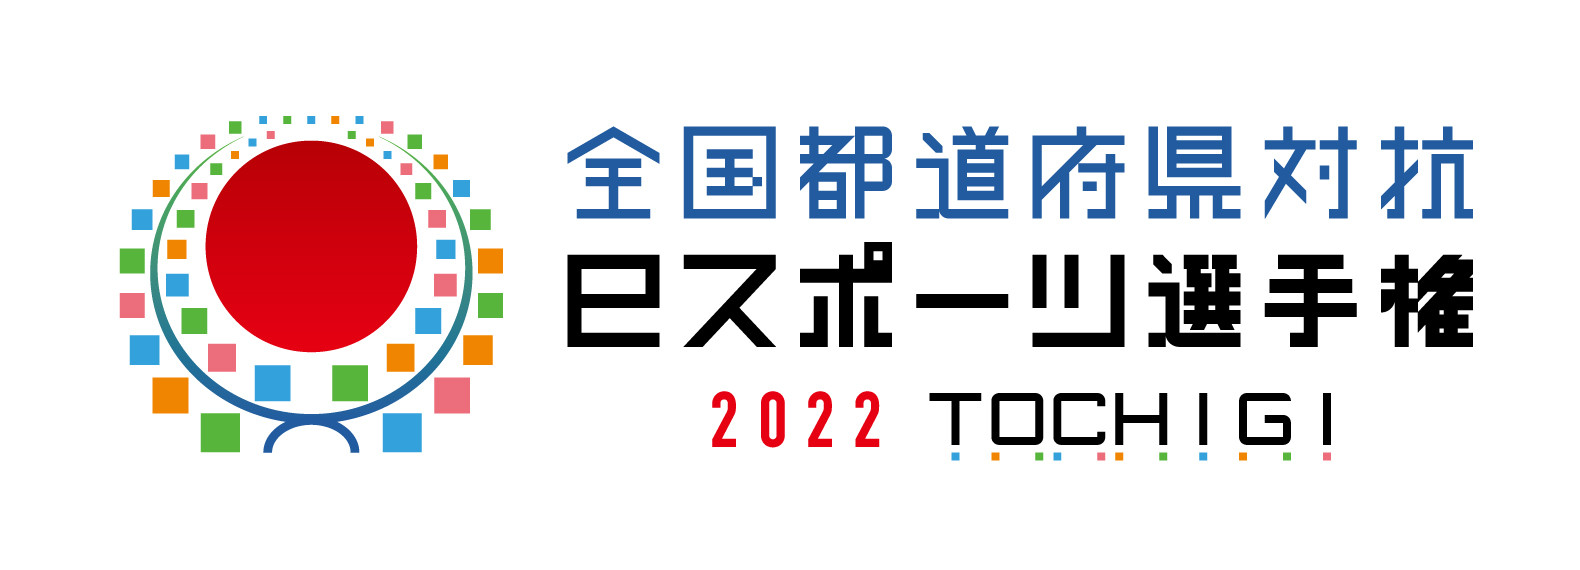 【大会情報】全国都道府県対抗eスポーツ選手権 2022 TOCHIGI 決勝大会【2022年10月15日、16日】